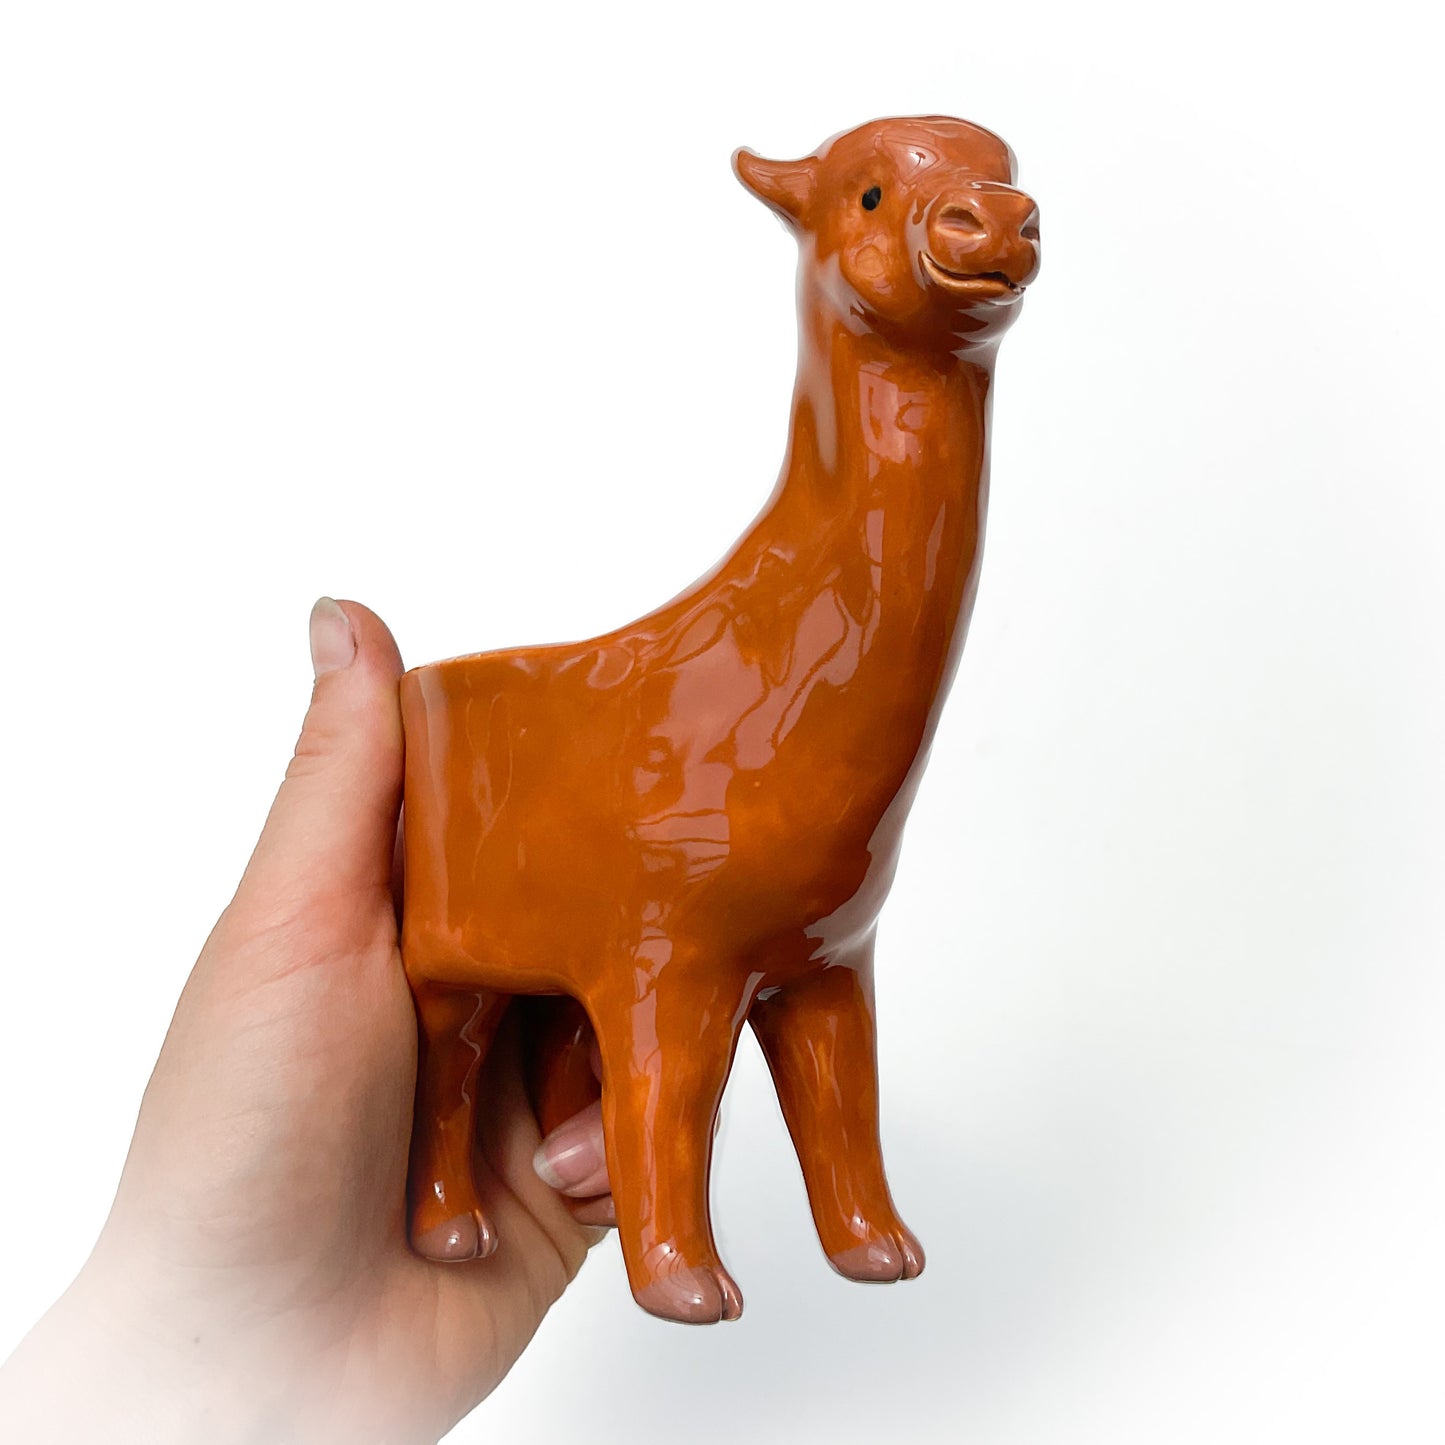 Fawn Alpaca Pot - Ceramic Alpaca Planter